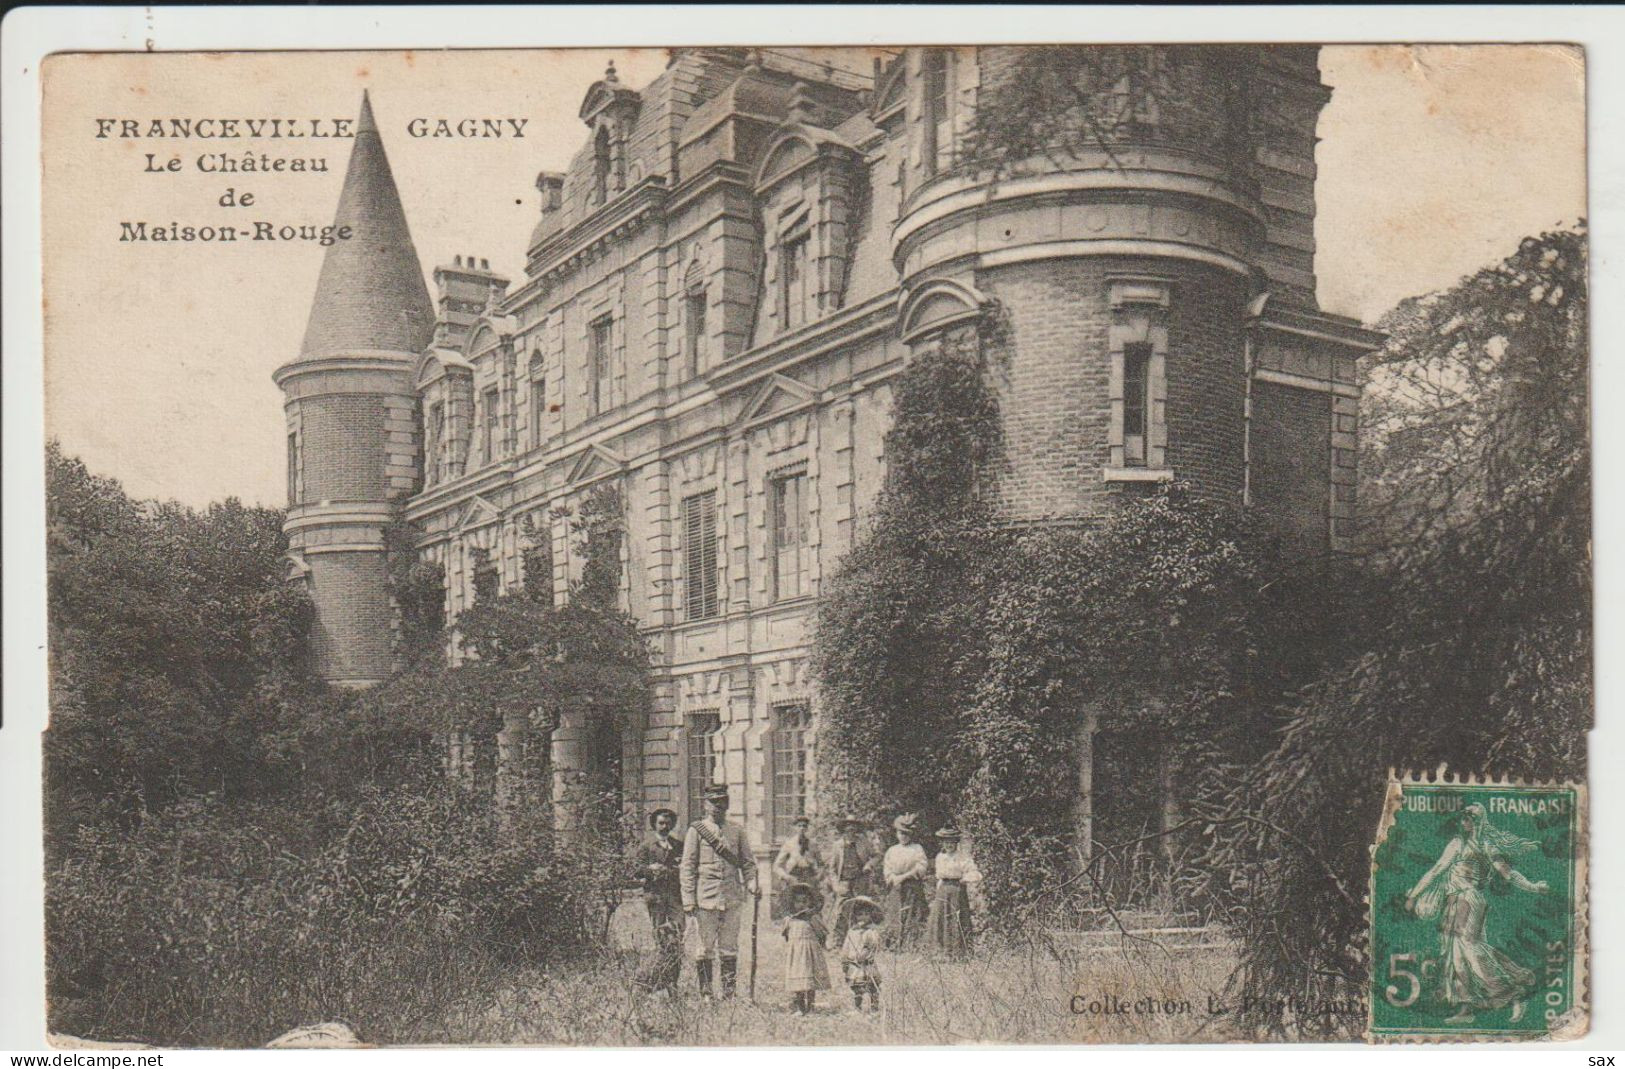 2417-346  Gagny (franceville) Chateau De Maison Rouge Garde Chasse    Dep 93  Retrait Le 12-05 - Gagny